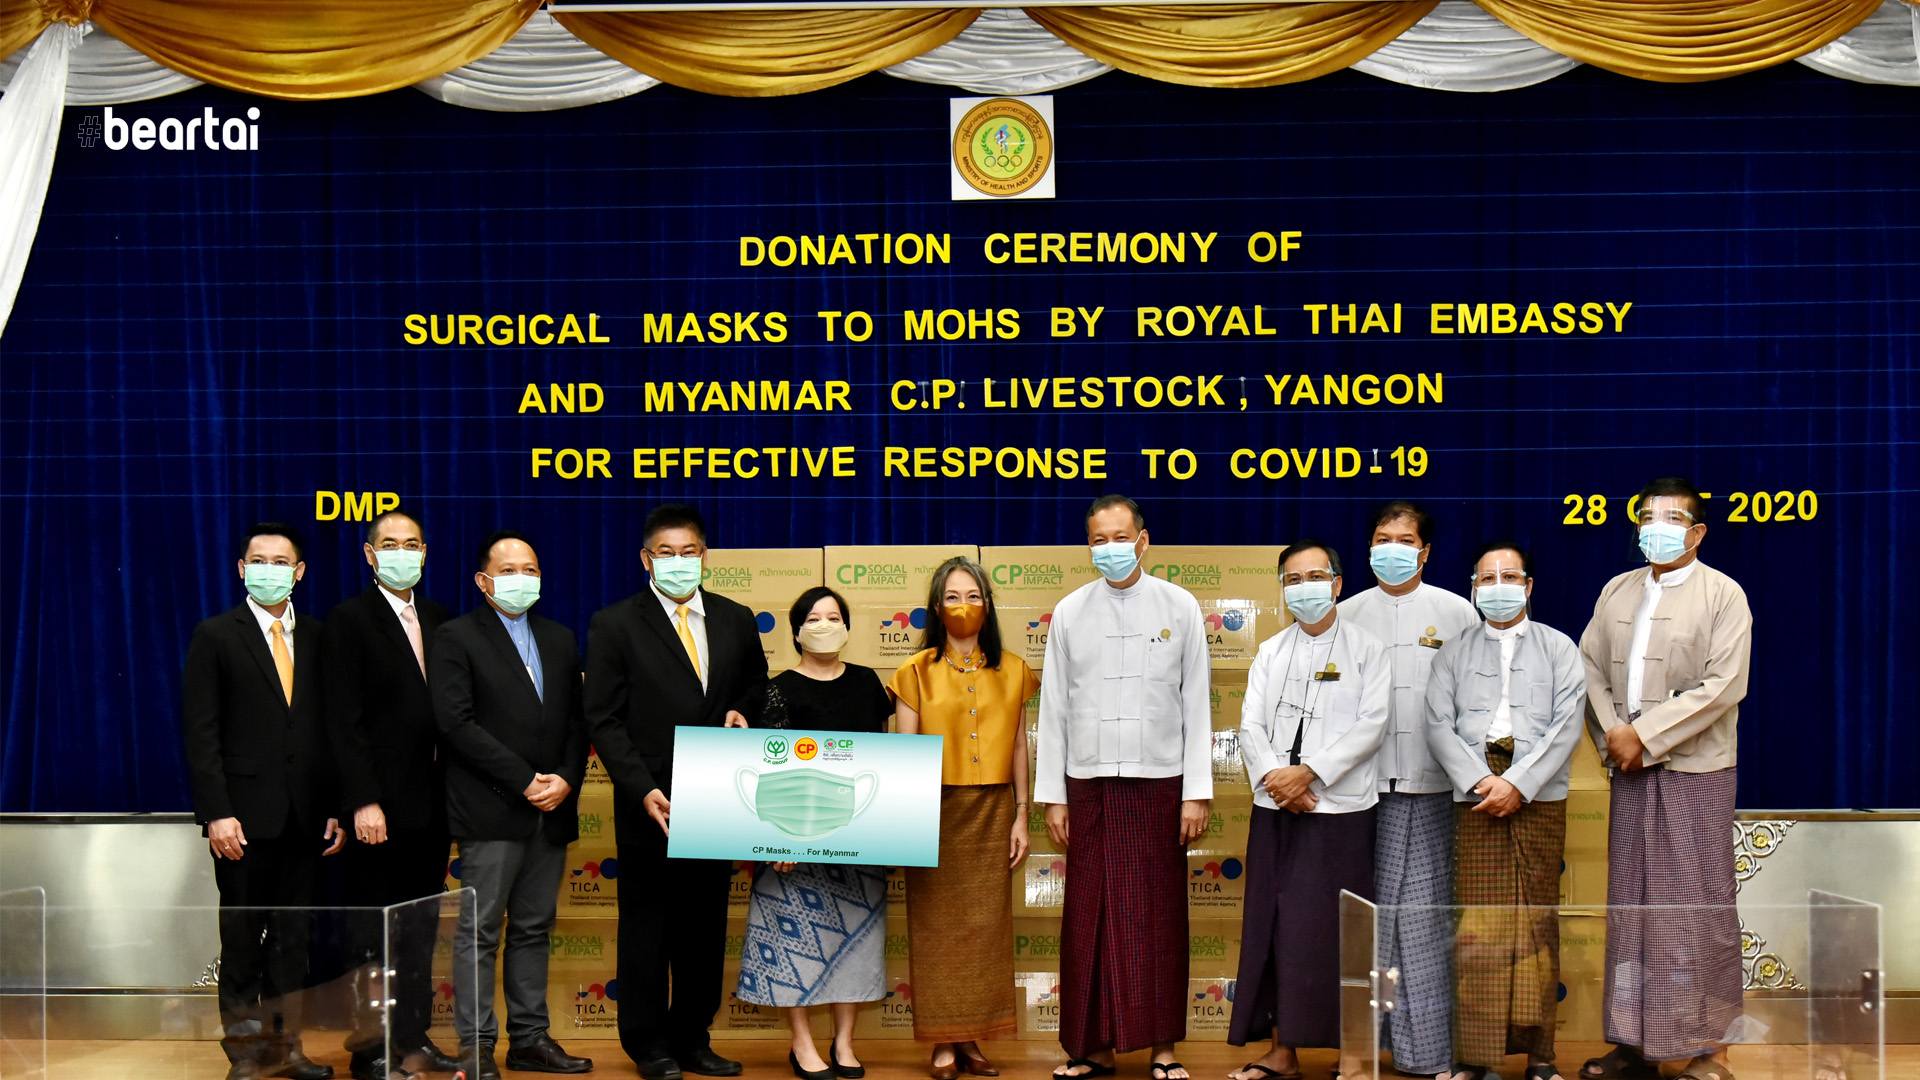 พม่าขอบคุณไทย เพื่อนแท้ยามยาก ซีพีช่วยวิกฤตโควิดในพม่า ส่งหน้ากากอนามัย 1 ล้านชิ้นถึงเมียนมา